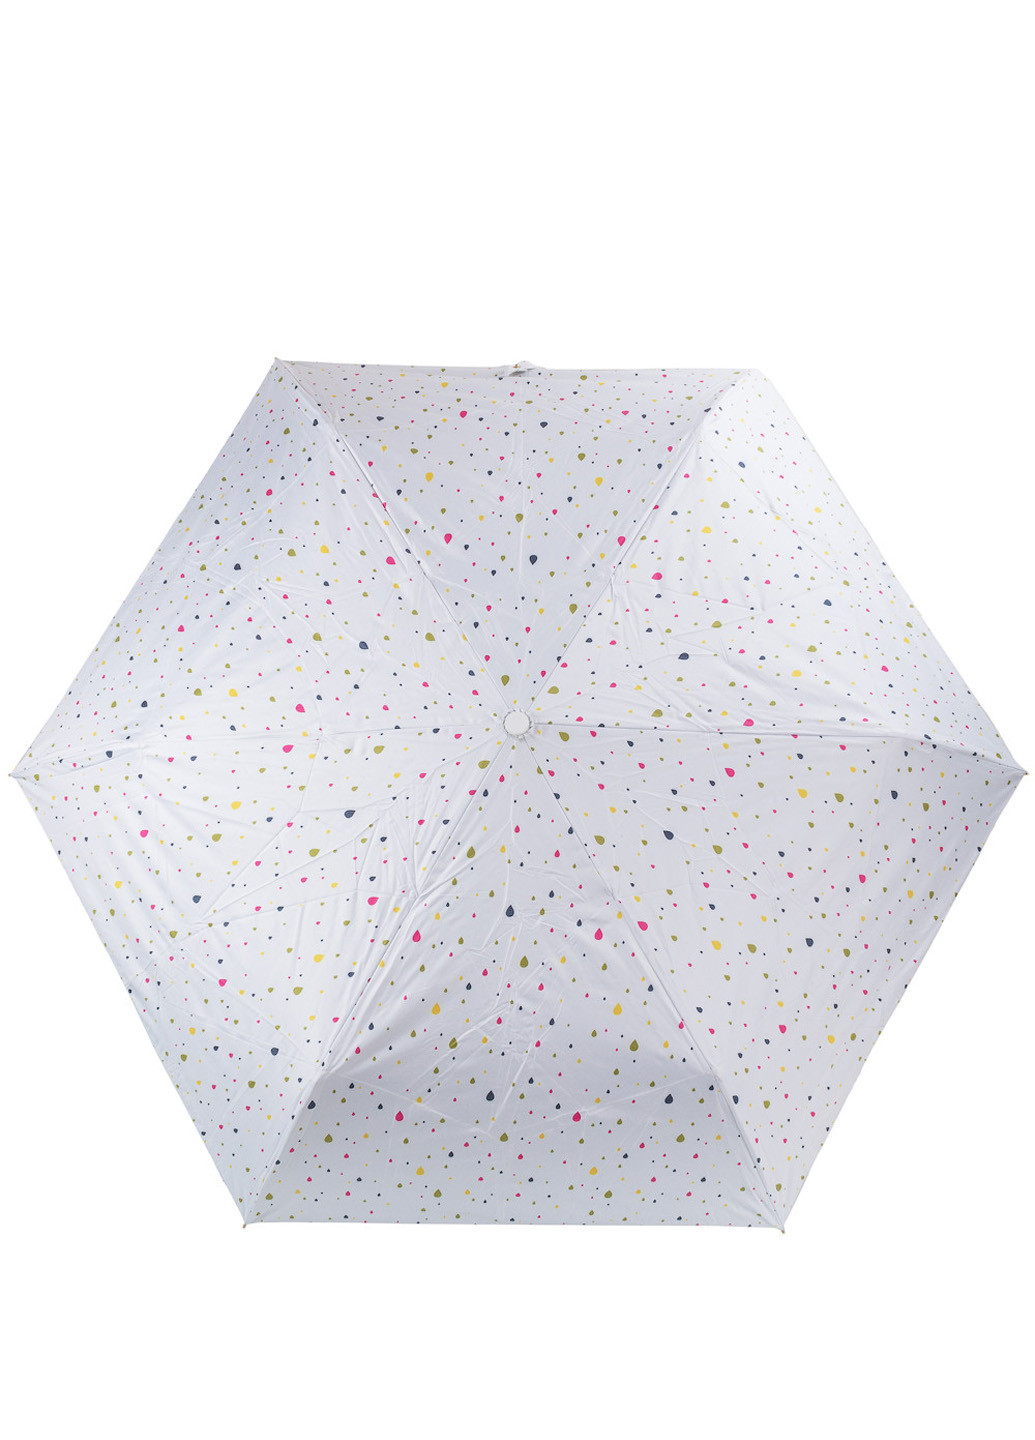 Женский складной зонт полный автомат 85 см Amo складной однотонный белый